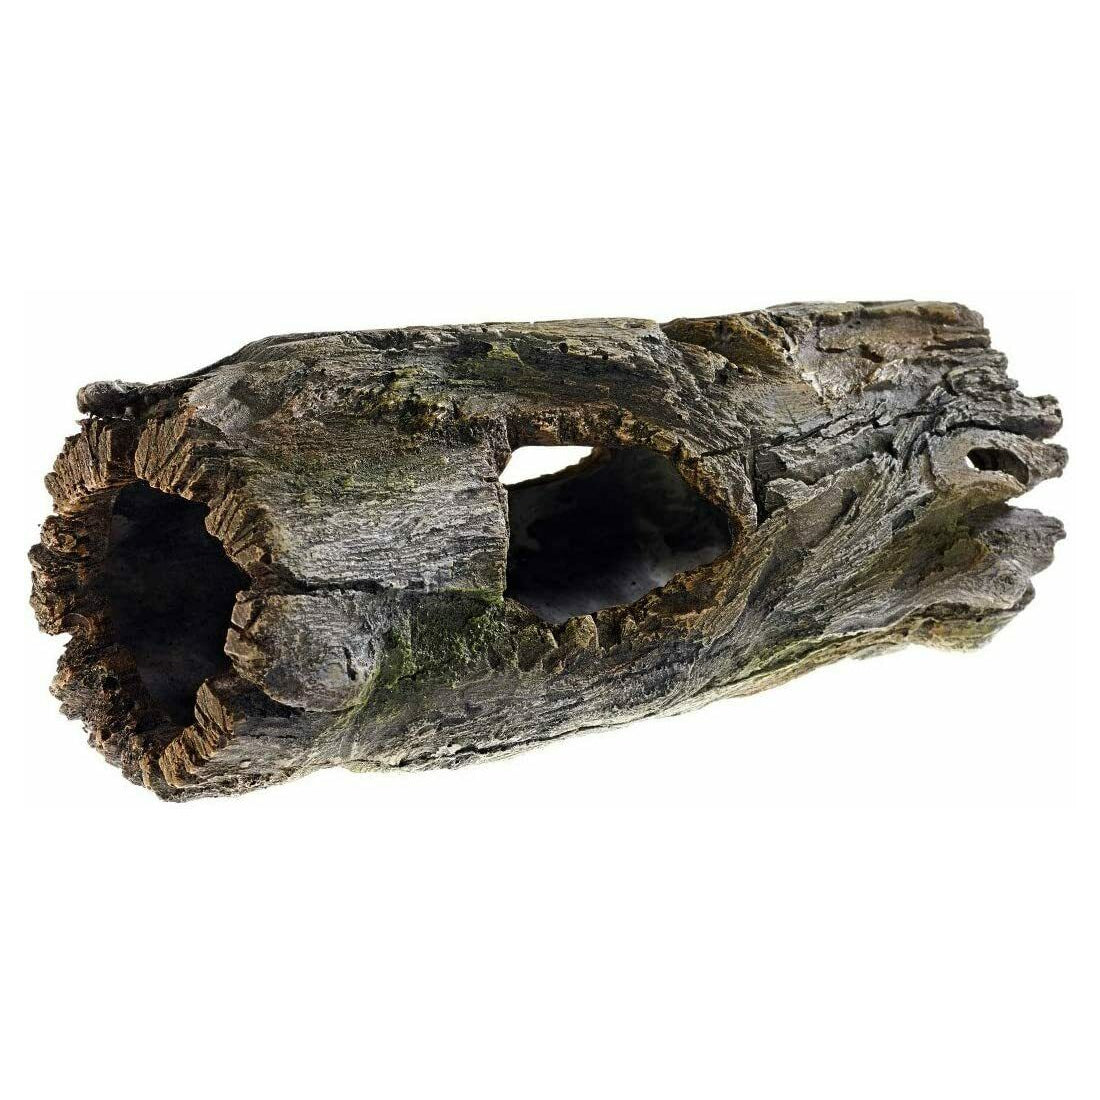 Classic Aquatics Chunky Driftwood Hide-Away Ornament